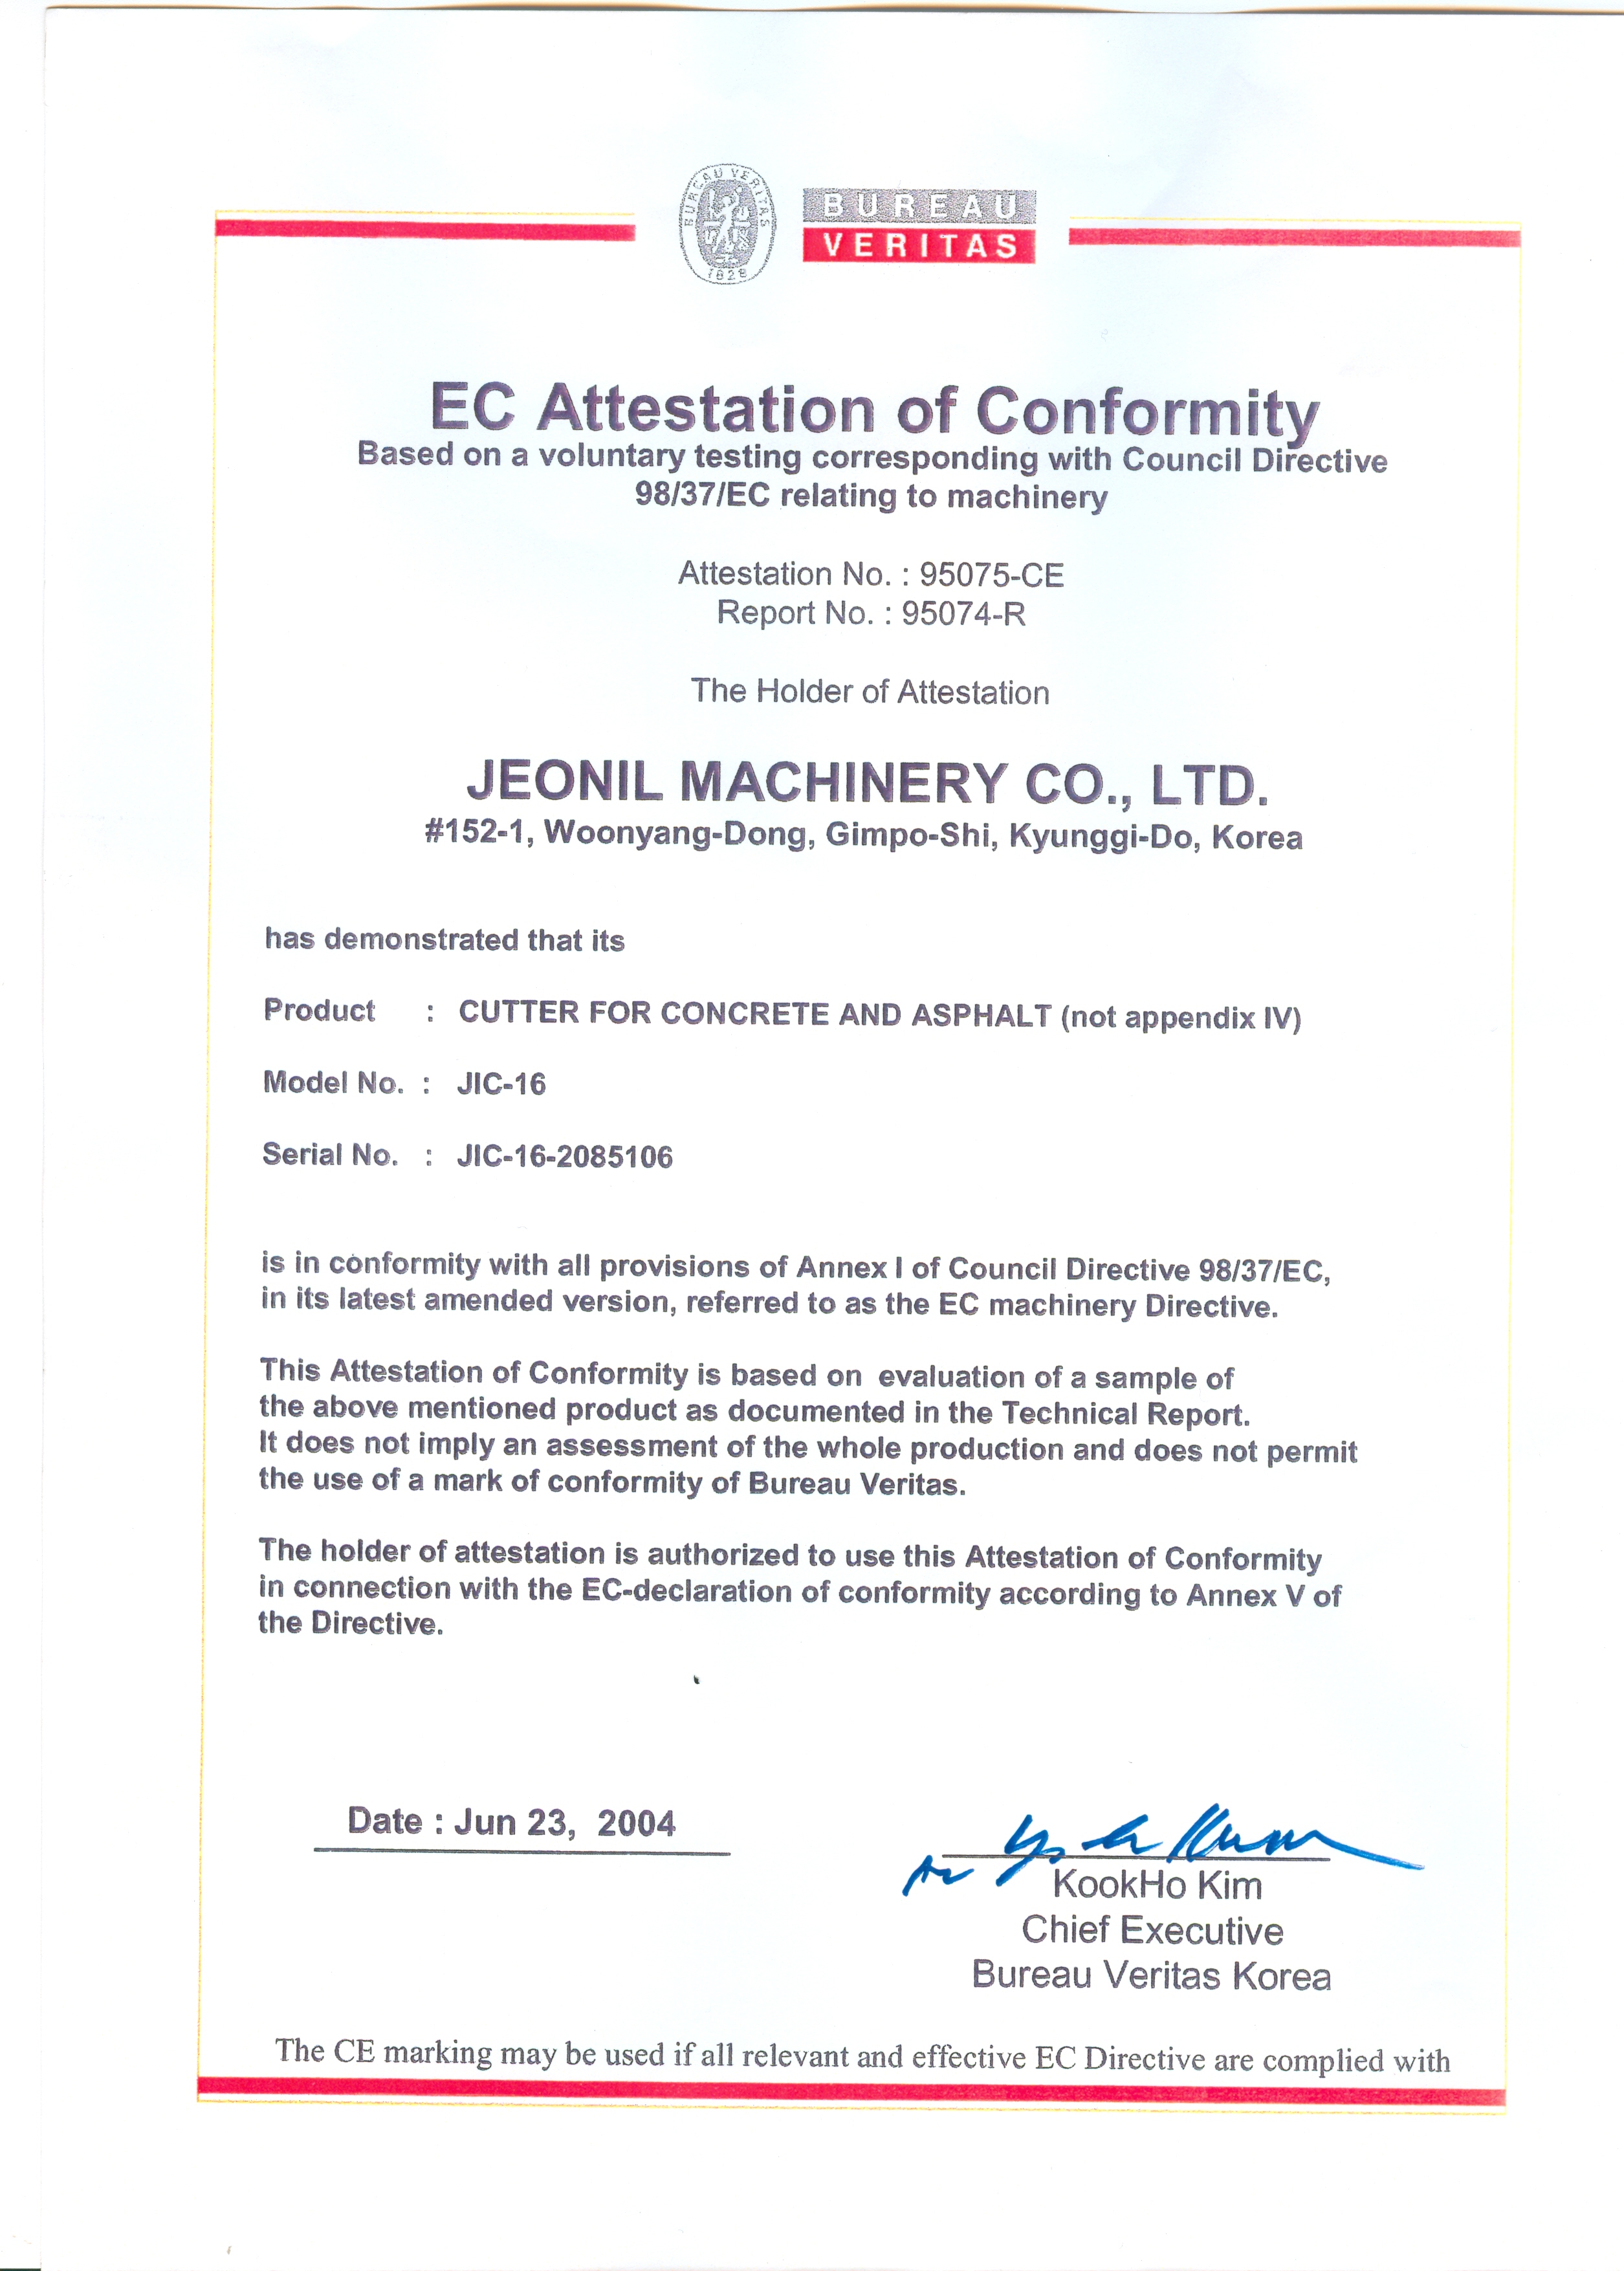 CE Certificate for JIC-16 Concrete Cutter.jpg